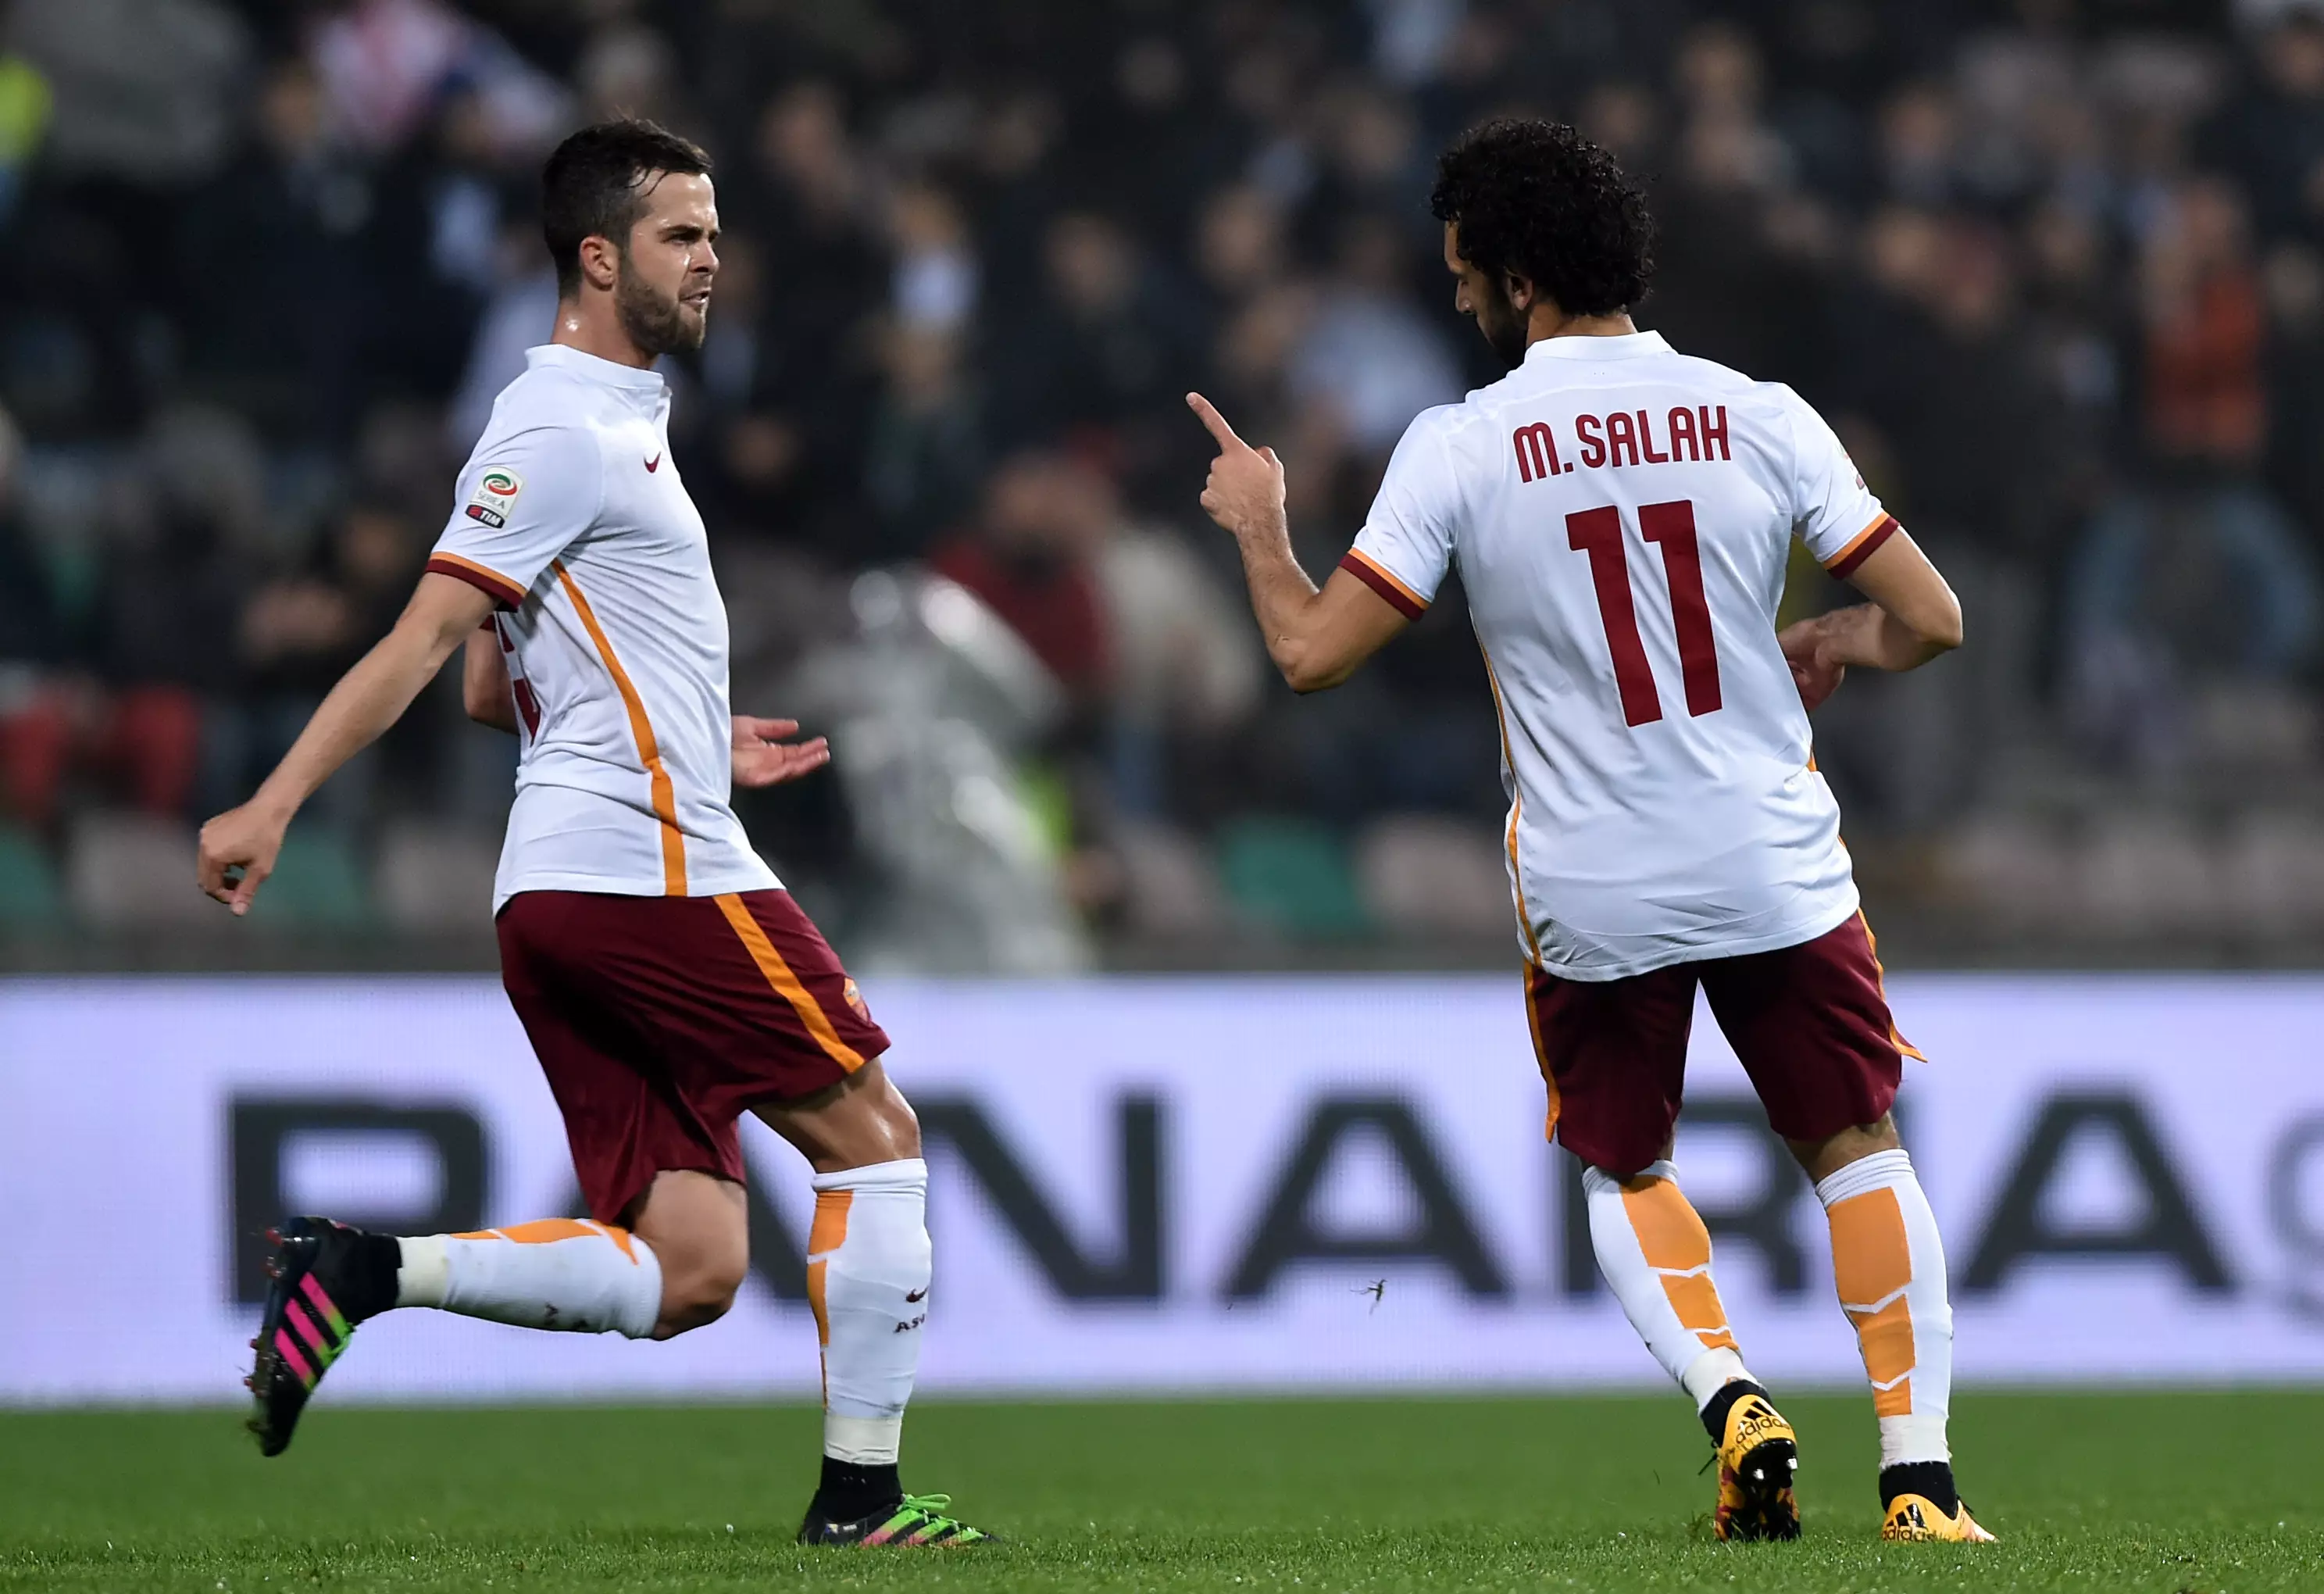 Salah celebrates scoring a goal for AS Roma. Image: PA